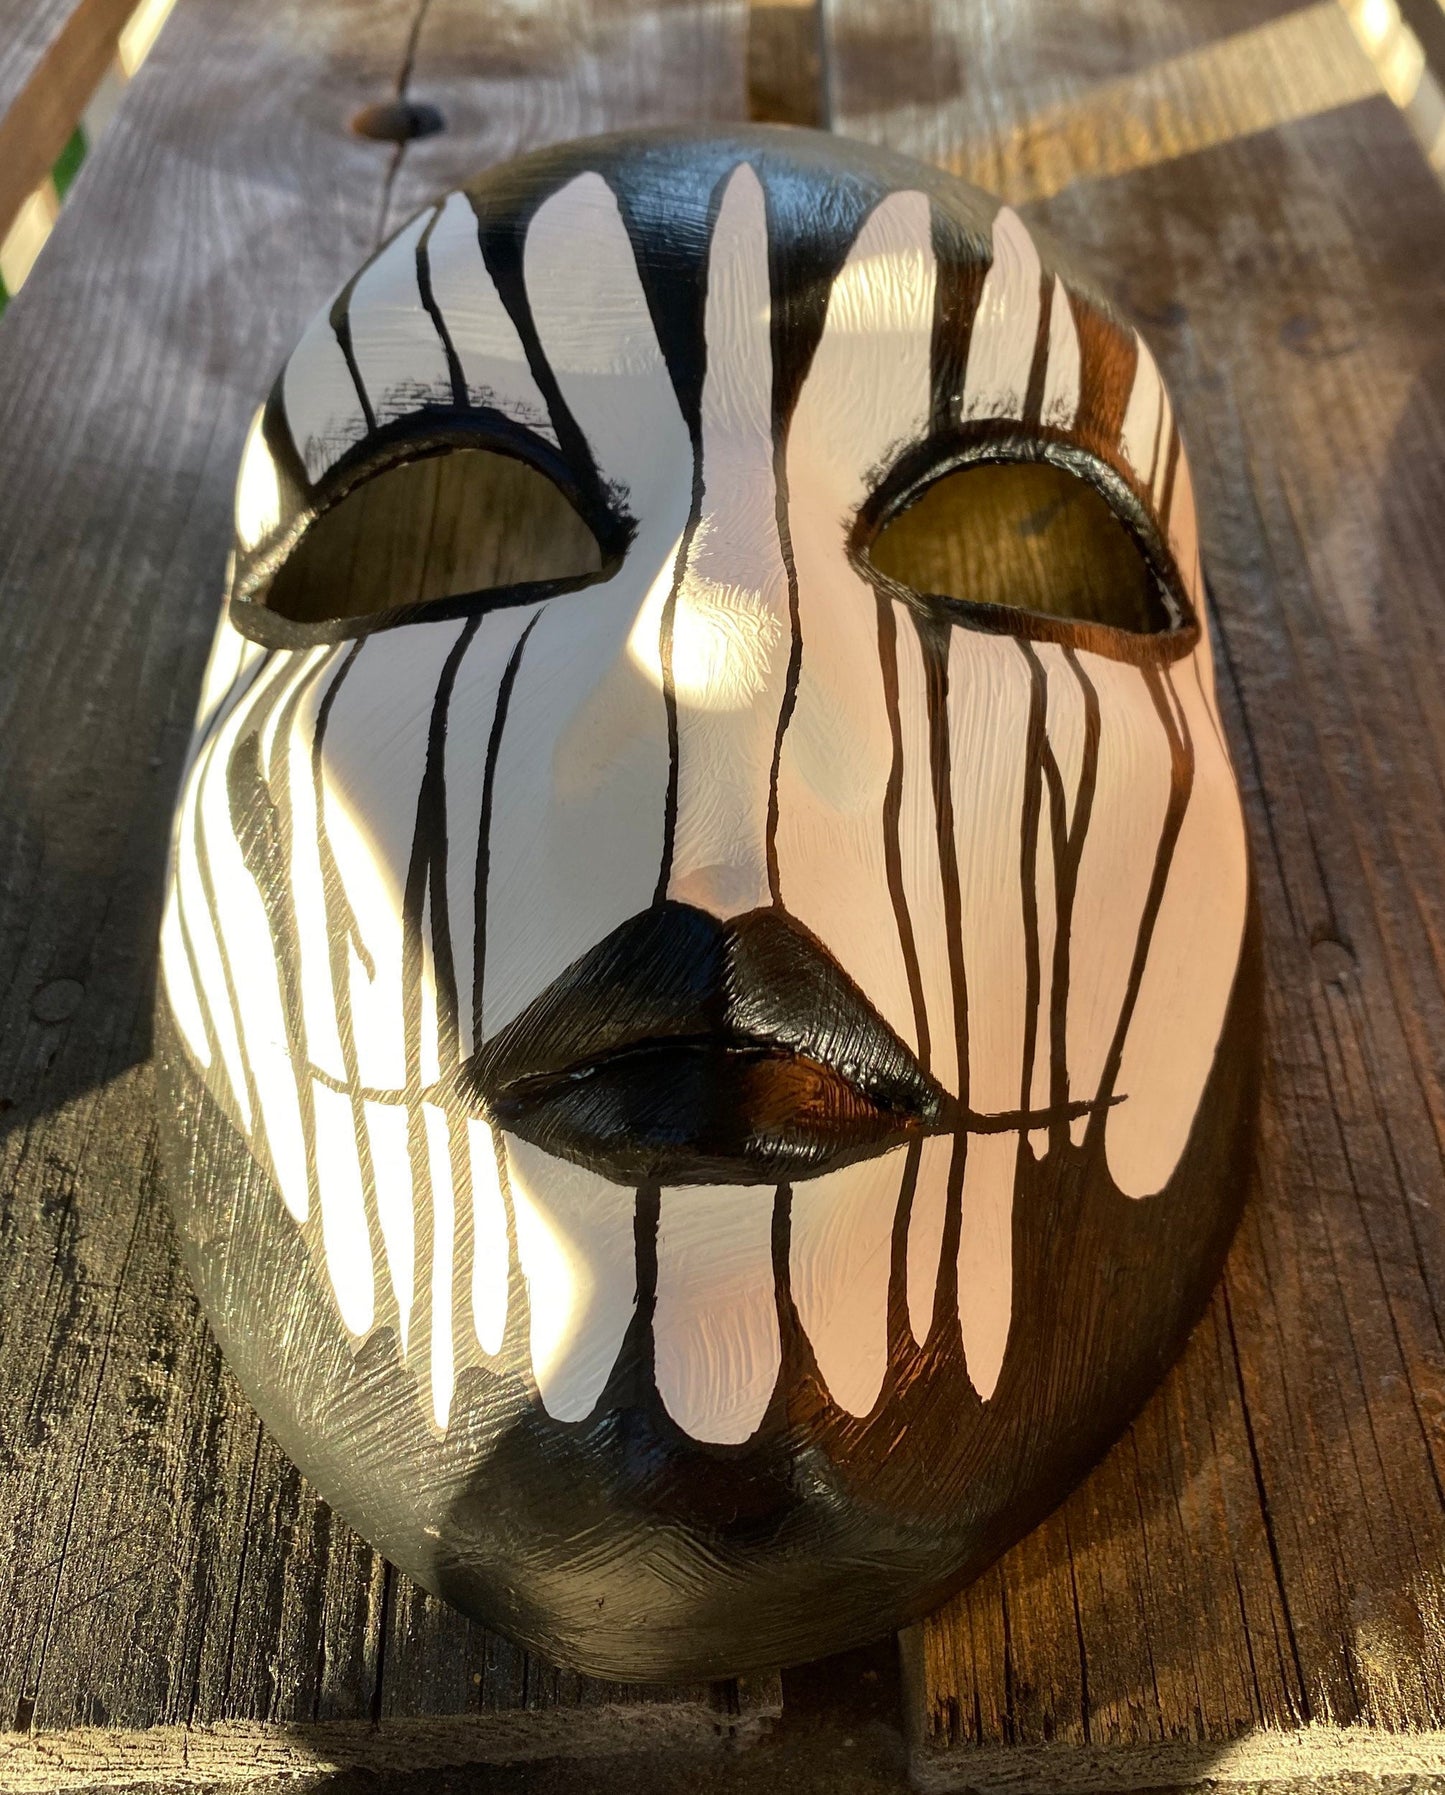 LIMITED EDITION Dia de Los Muertos Death Day mask Italy American Halloween models Dead mask Calavera mask